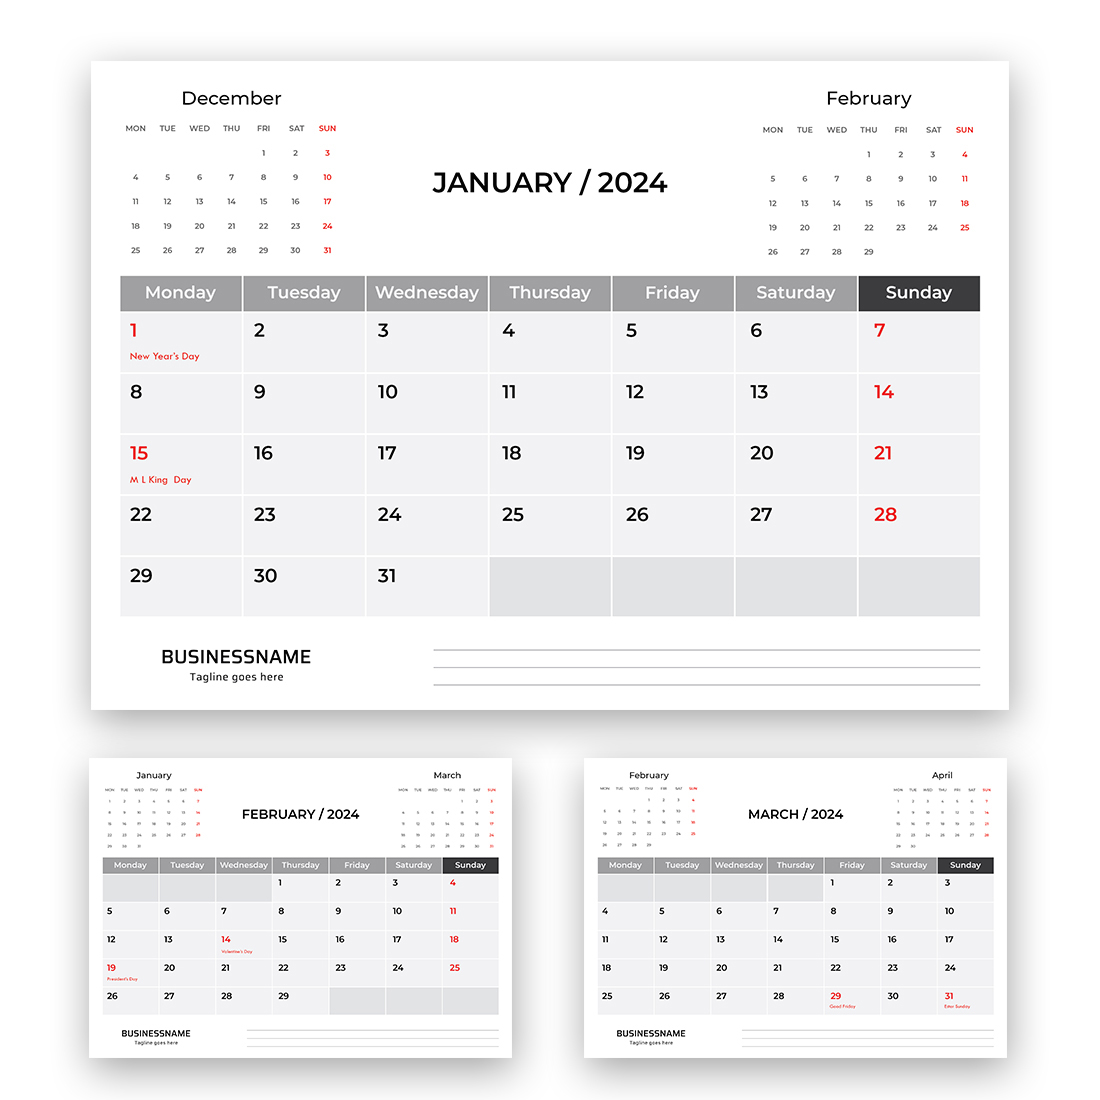 Desk Calendar 2024 cover image.